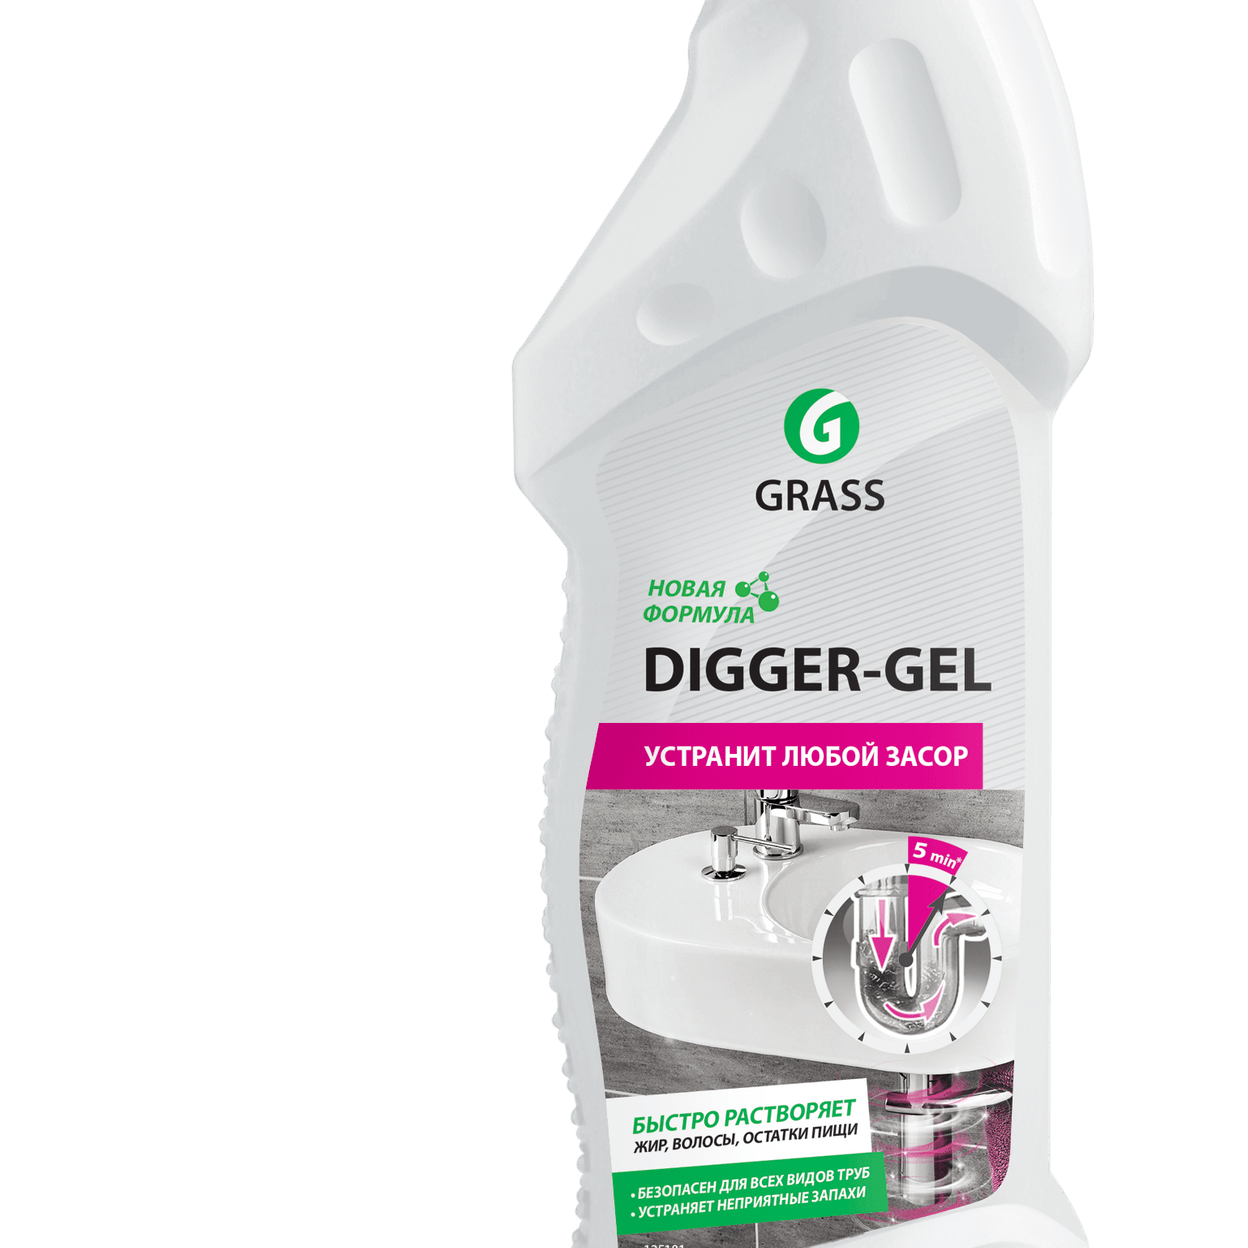 Digger gel для прочистки труб. Grass "Digger-Gel" гель для чистки труб 750 мл. 125181 Grass ср-во для прочистки труб "Digger-Gel" 750 мл, шт. Средство Грасс диггер гель для прочистки канализационных труб 750 мл. Диггер гель 750мл.